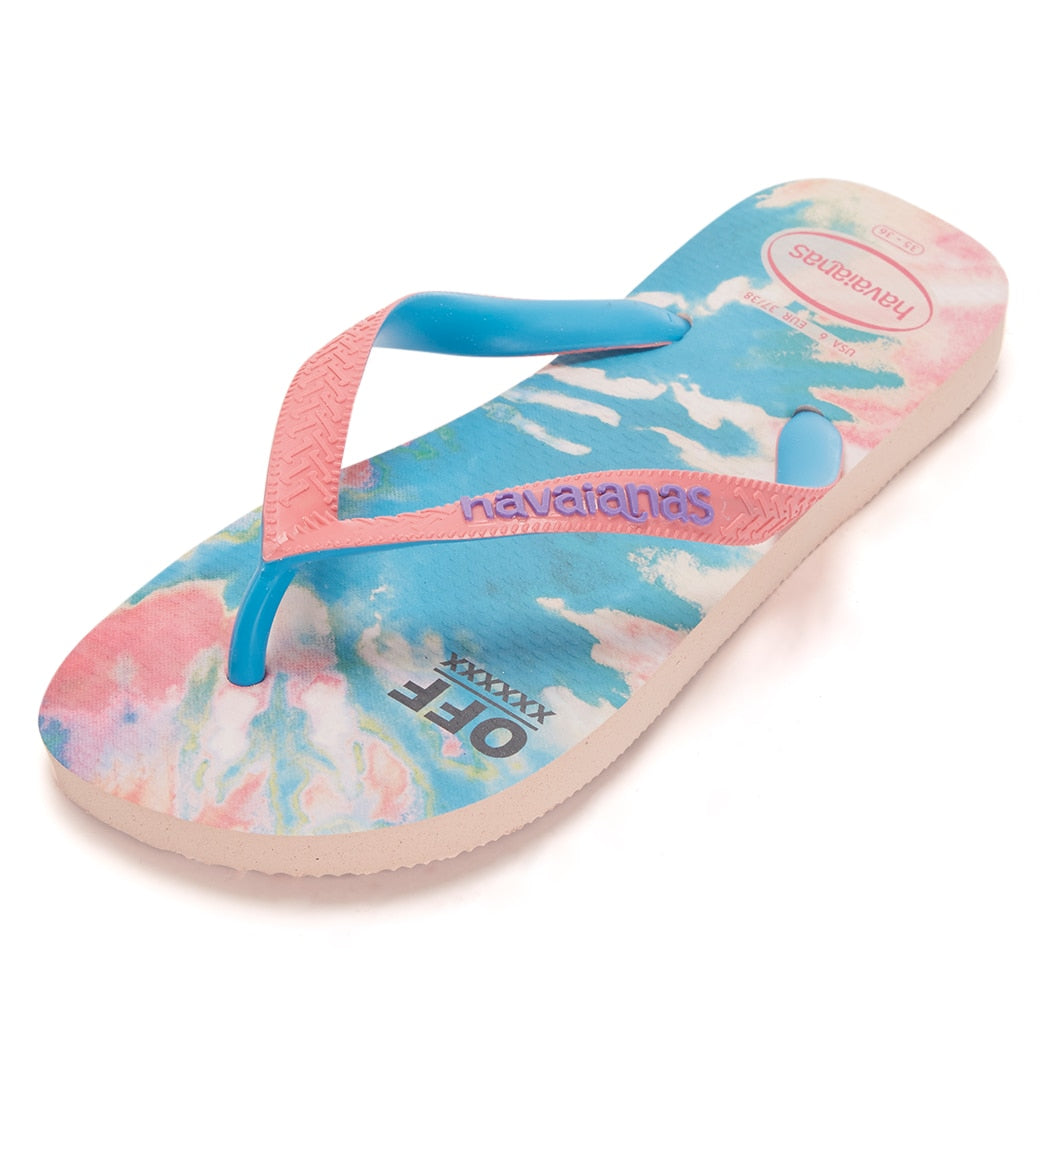 Havaianas Top Fashion Sandals - Ballet Rose 39/40 - Swimoutlet.com